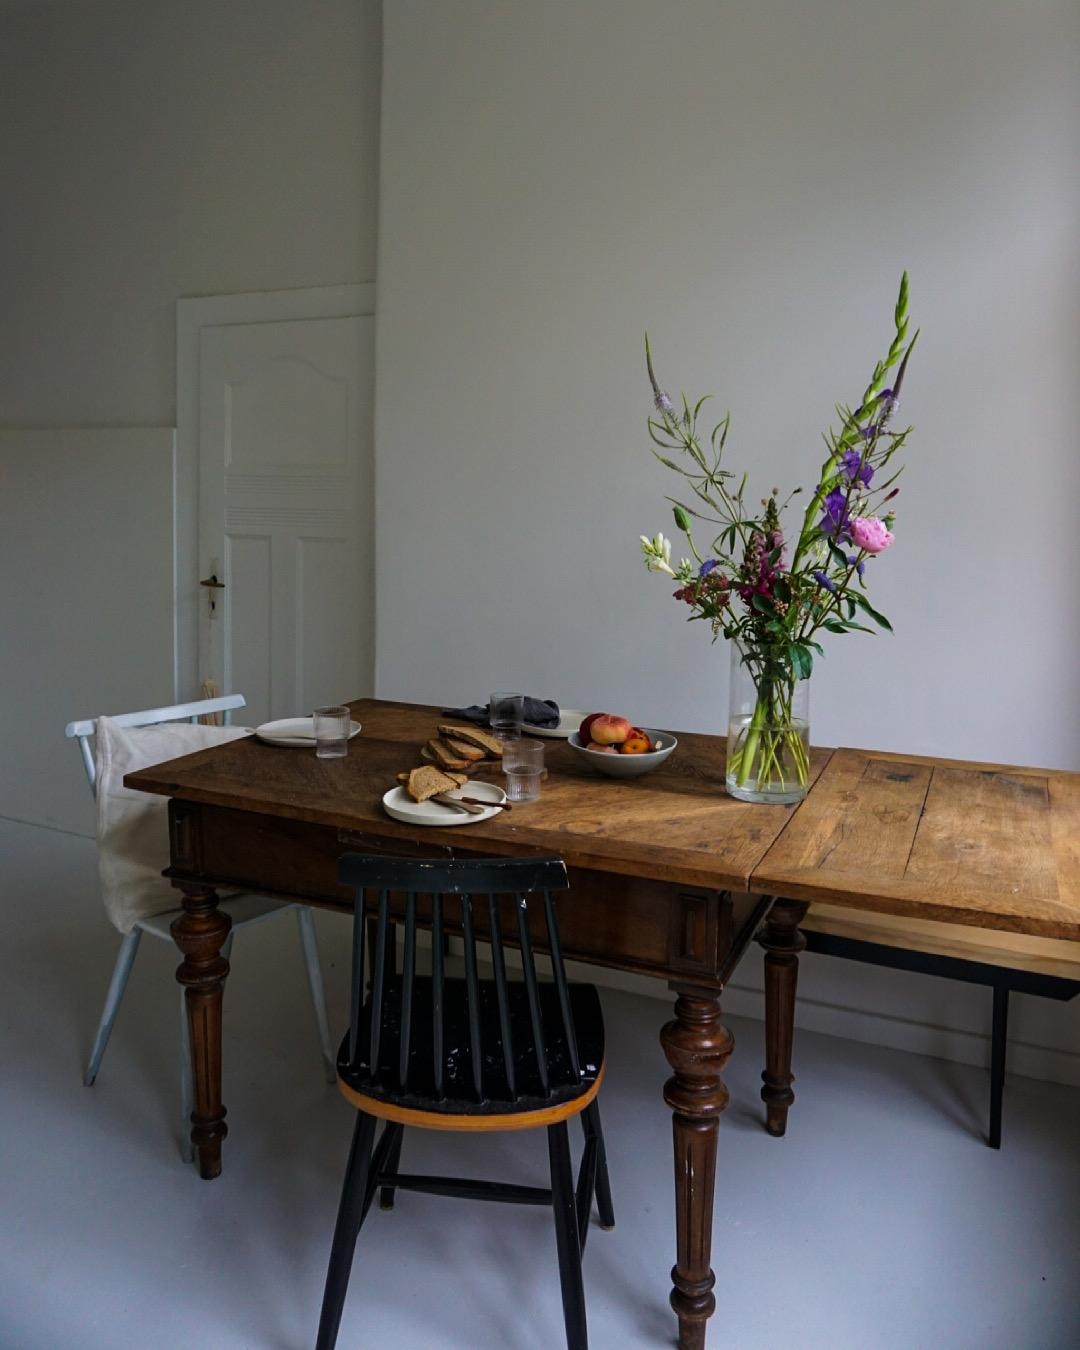 Wochenendfrühstück
#mykitchen #home #flowers #vintage #altbau #ceramics #nordicroom #interior